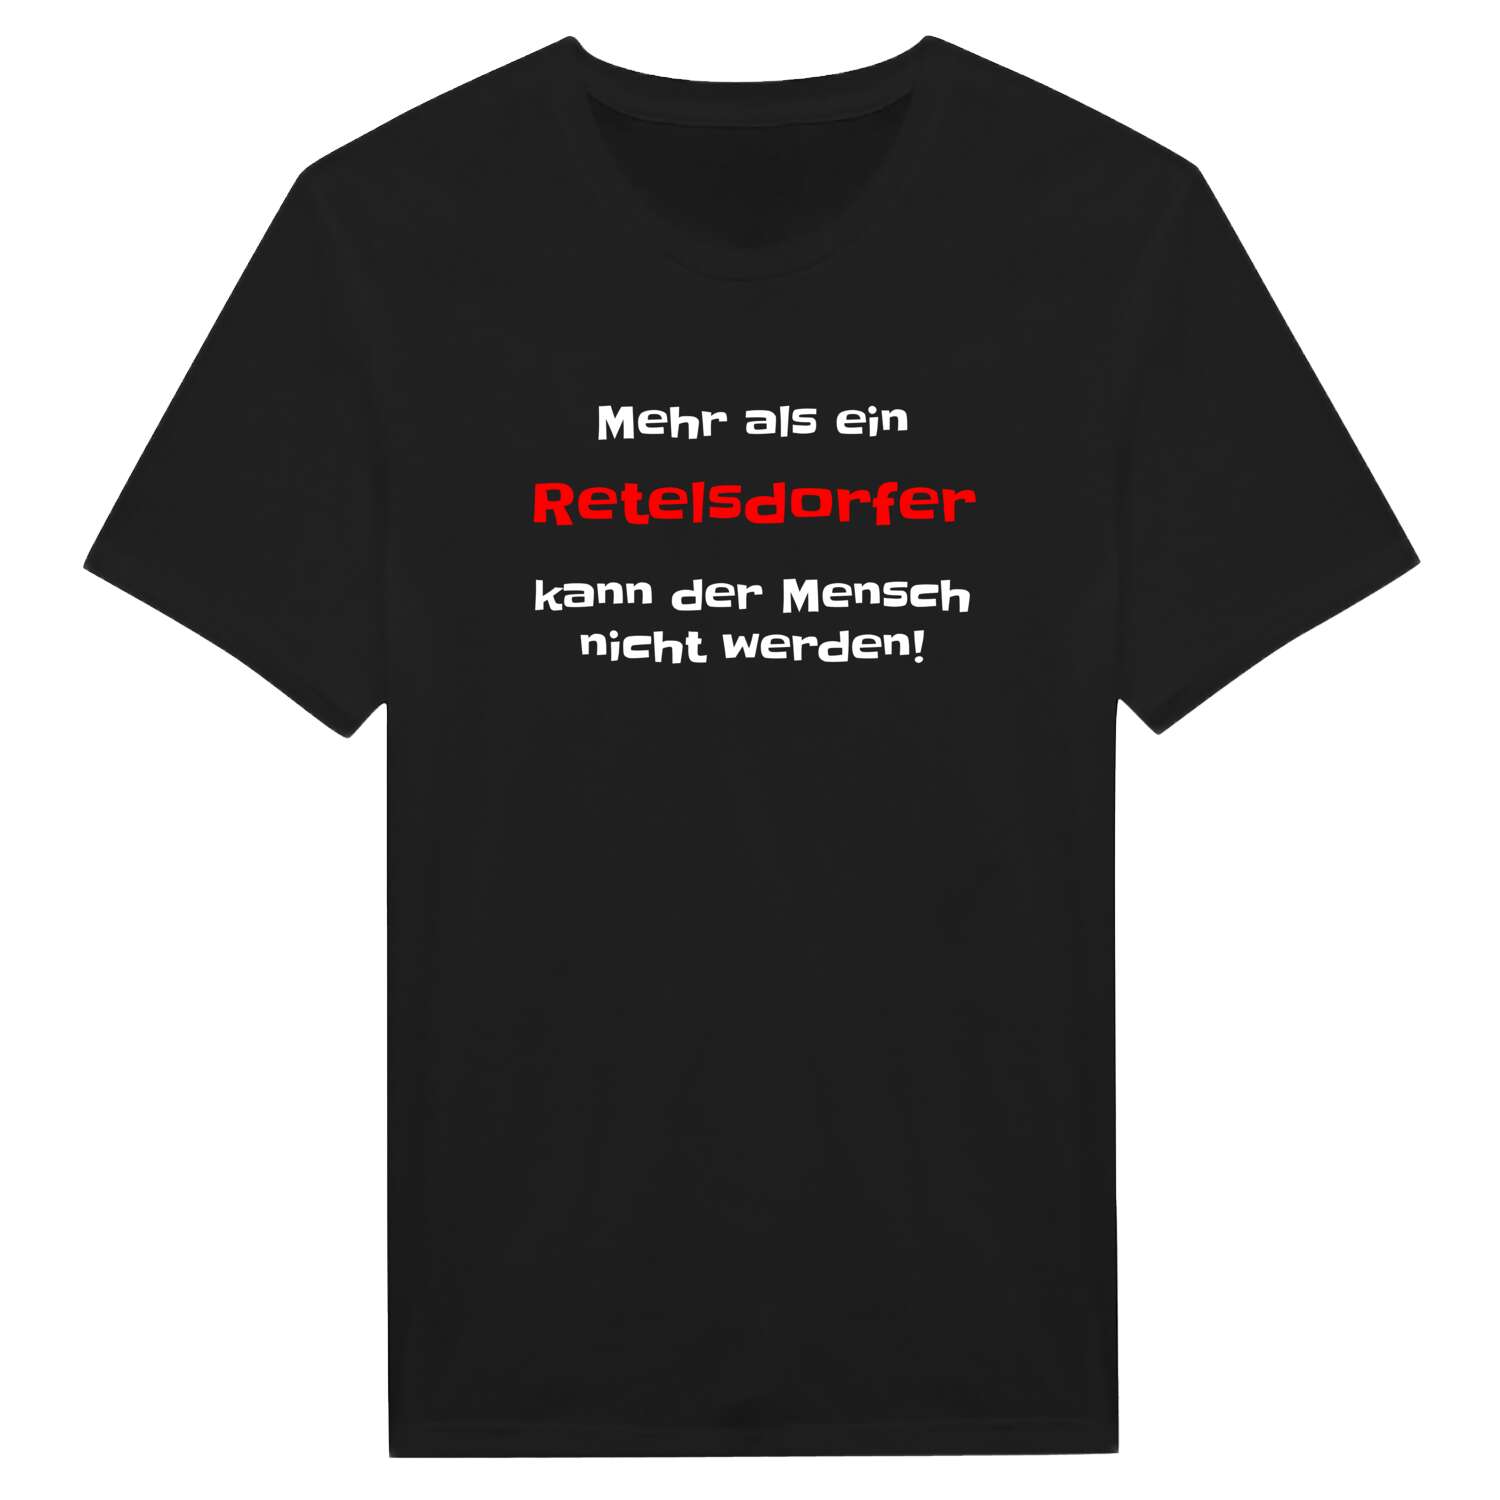 Retelsdorf T-Shirt »Mehr als ein«